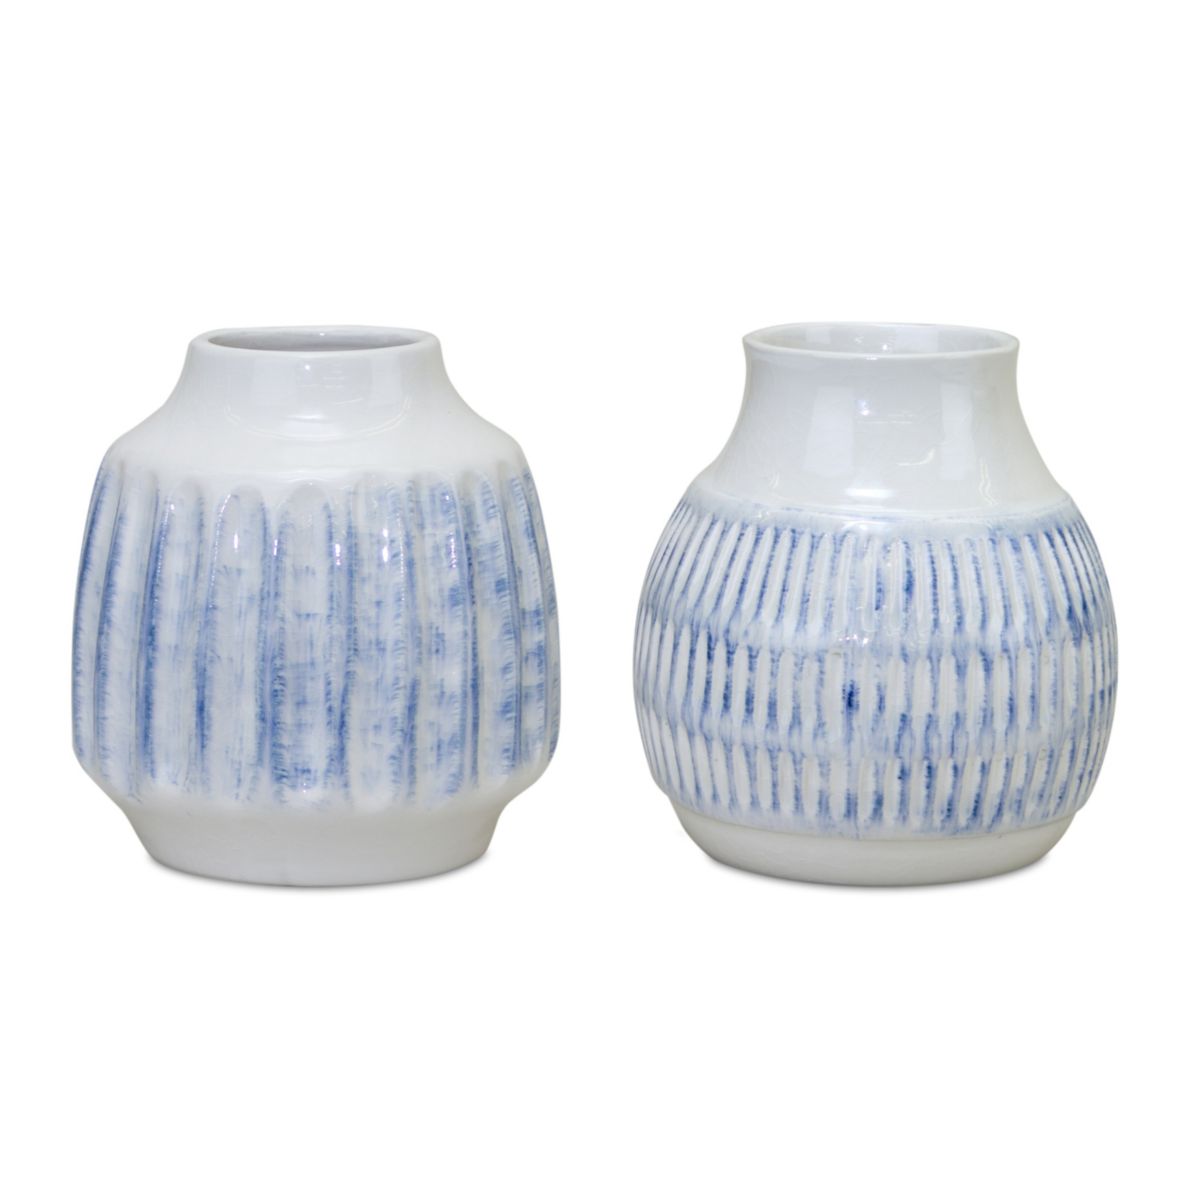 Melrose Ribbed Ceramic Vase with Washed Blue Finish 2-pc. Set Melrose